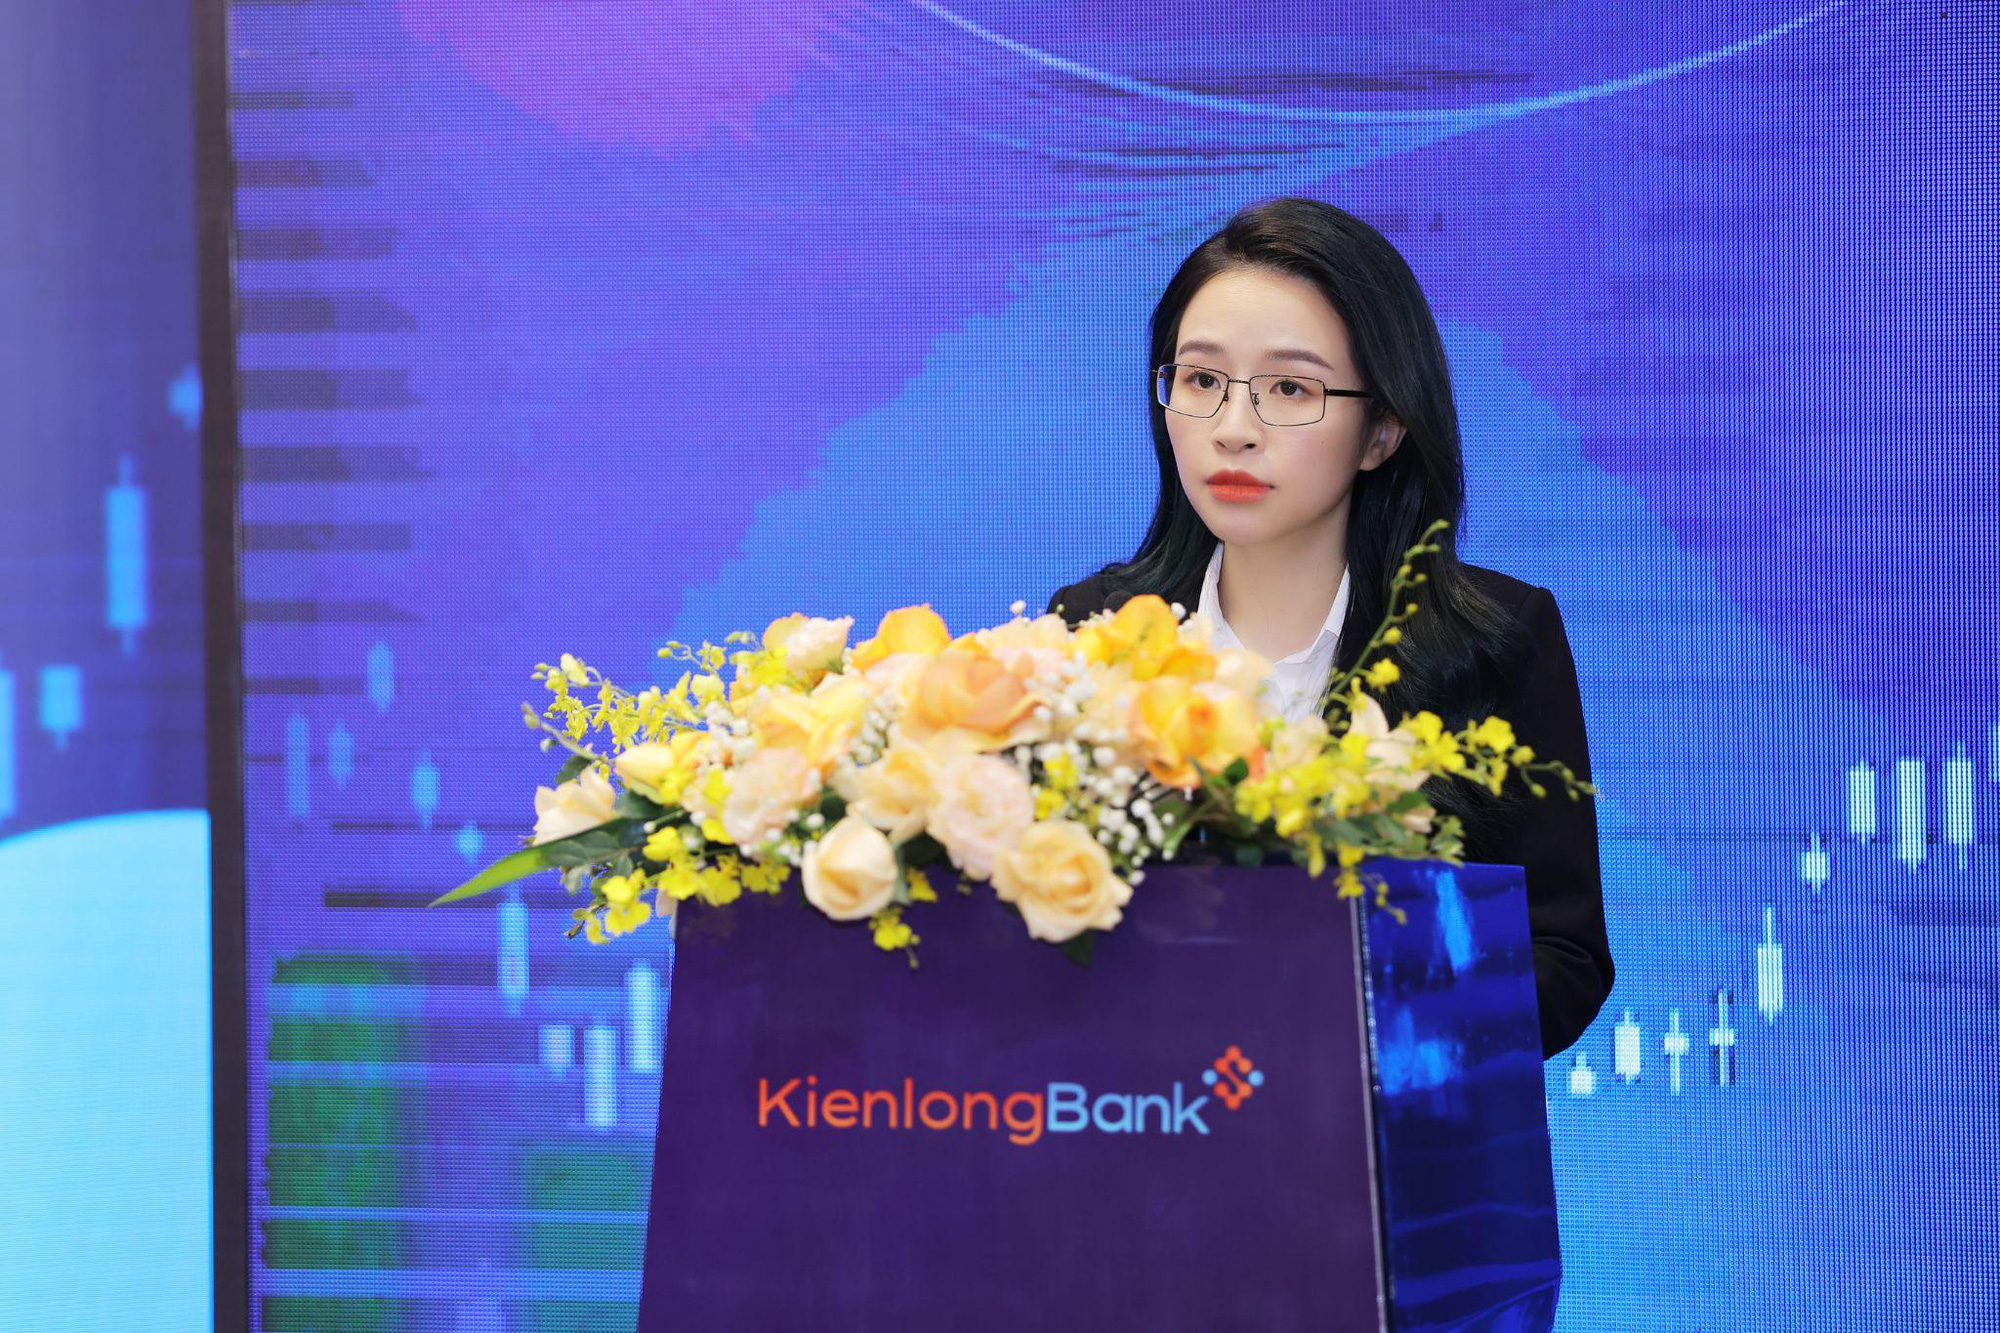 KienlongBank tổ chức ĐHĐCĐ bất thường, chuẩn bị niêm yết cổ phiếu lên sàn chứng khoán - Ảnh 2.